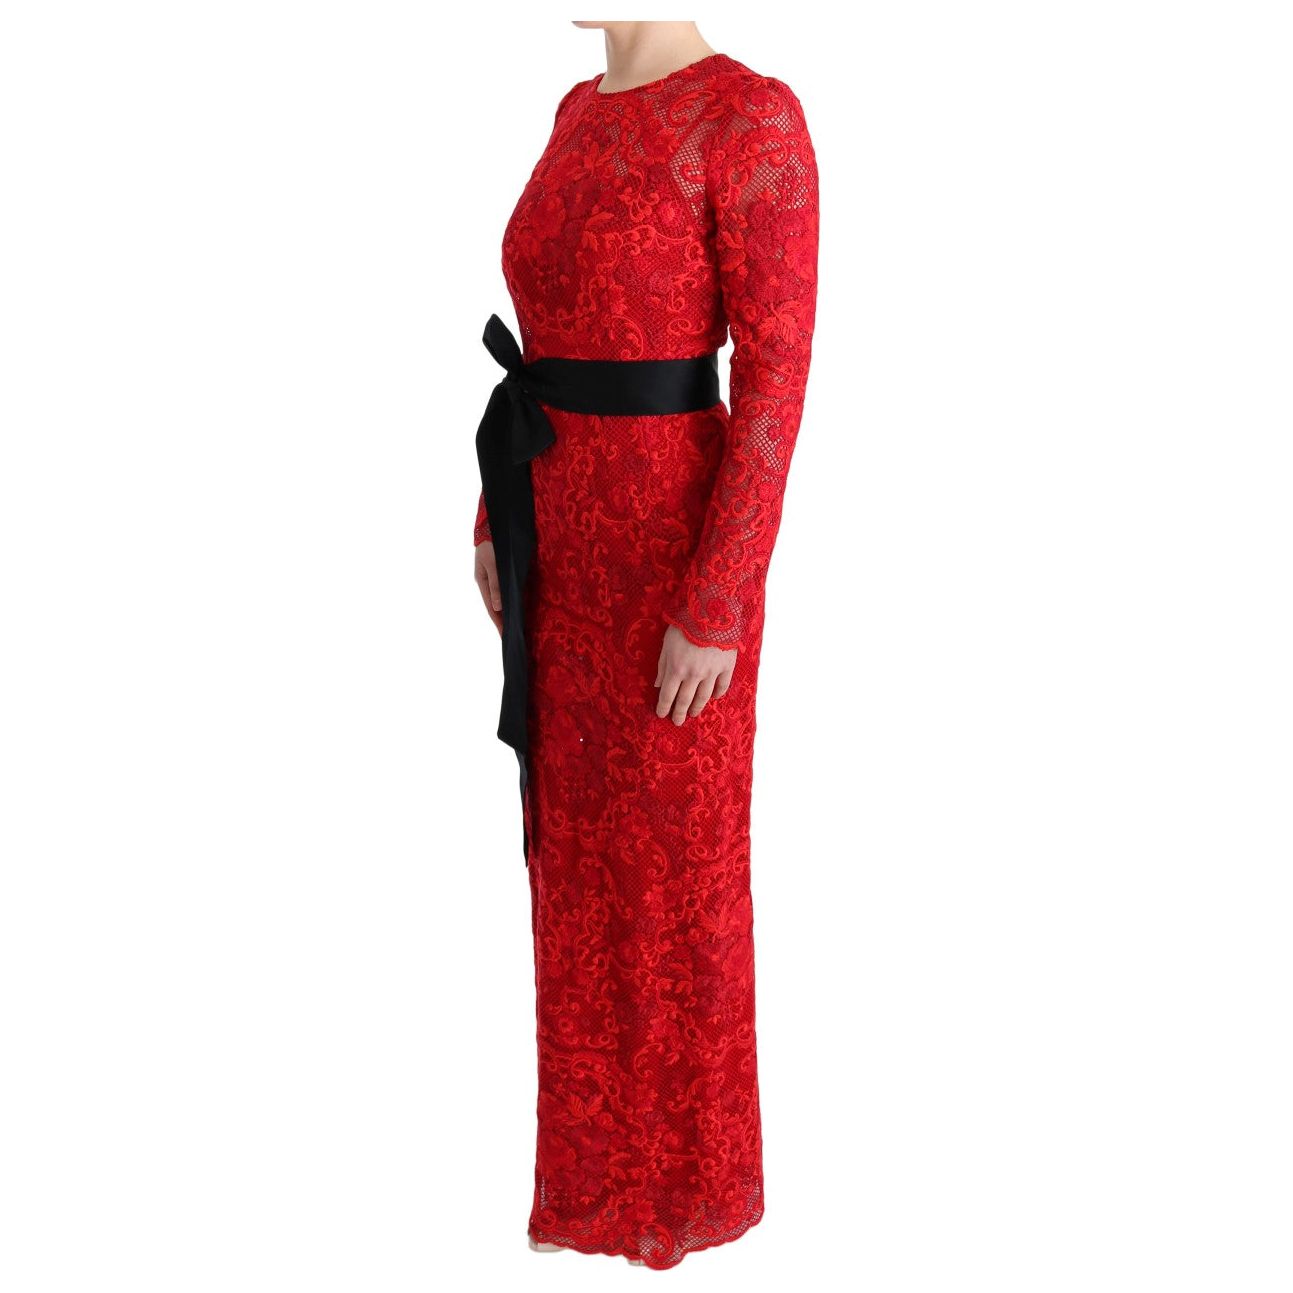 Elegant Red Sheath Dress with Silk Bow Belt